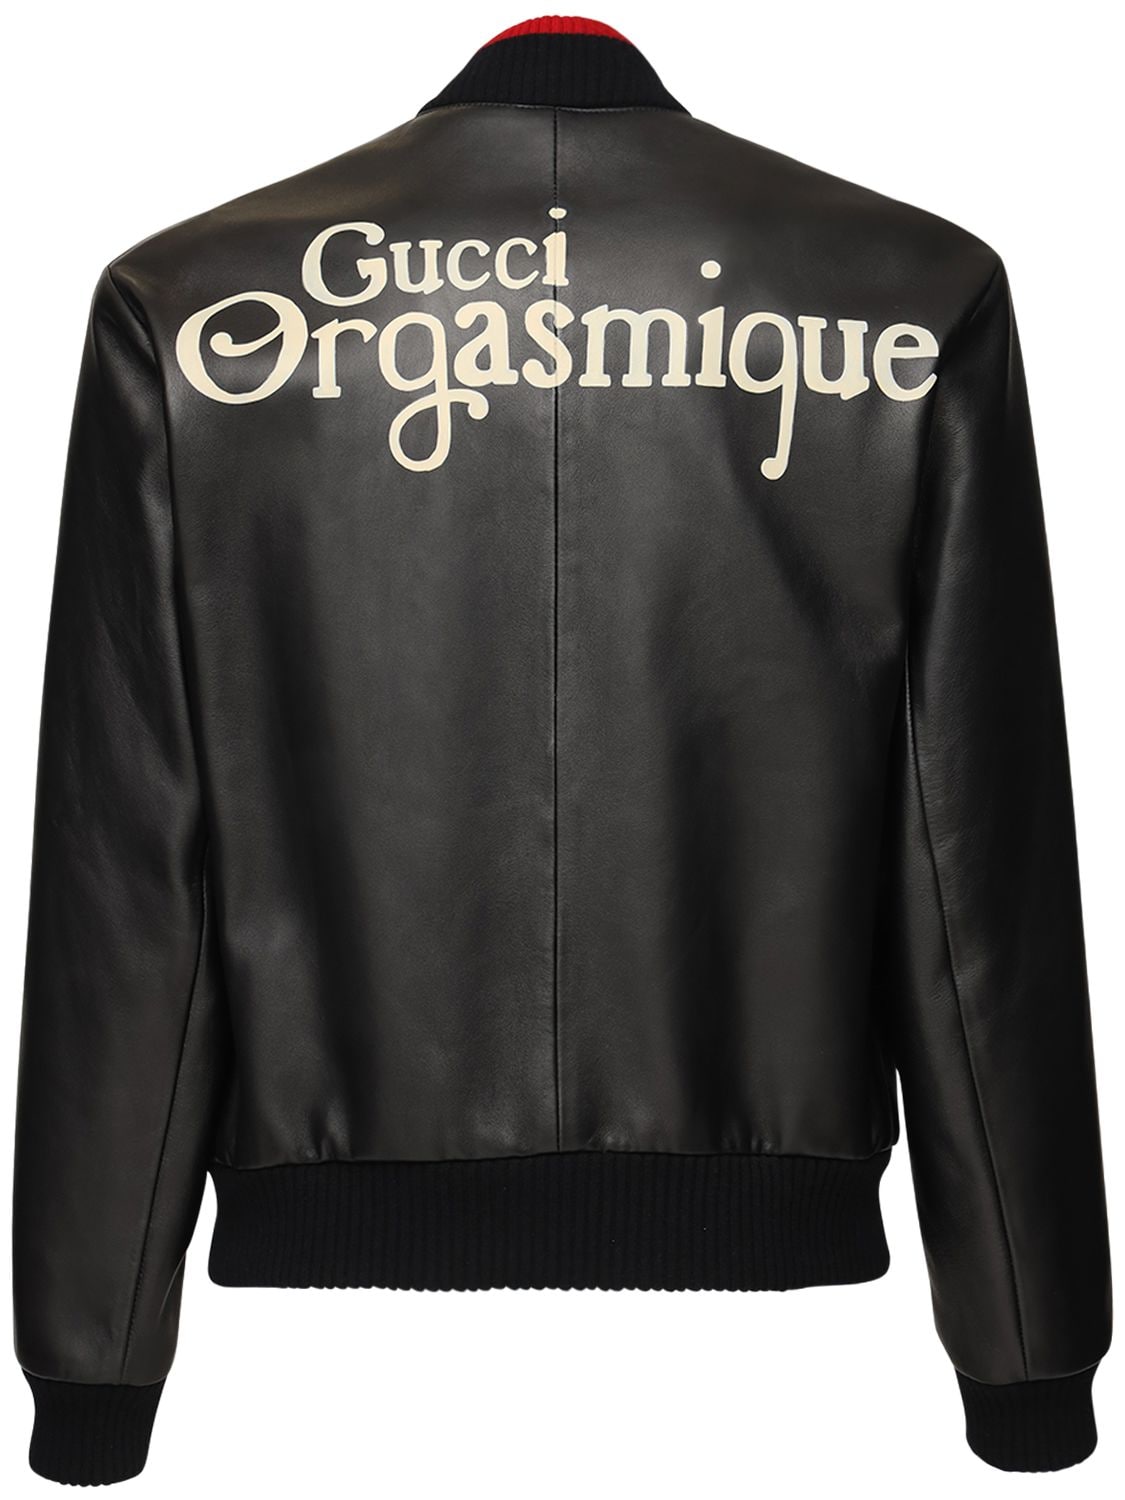 Orgasmique Soft Leather Bomber Jacket | The Fashionisto